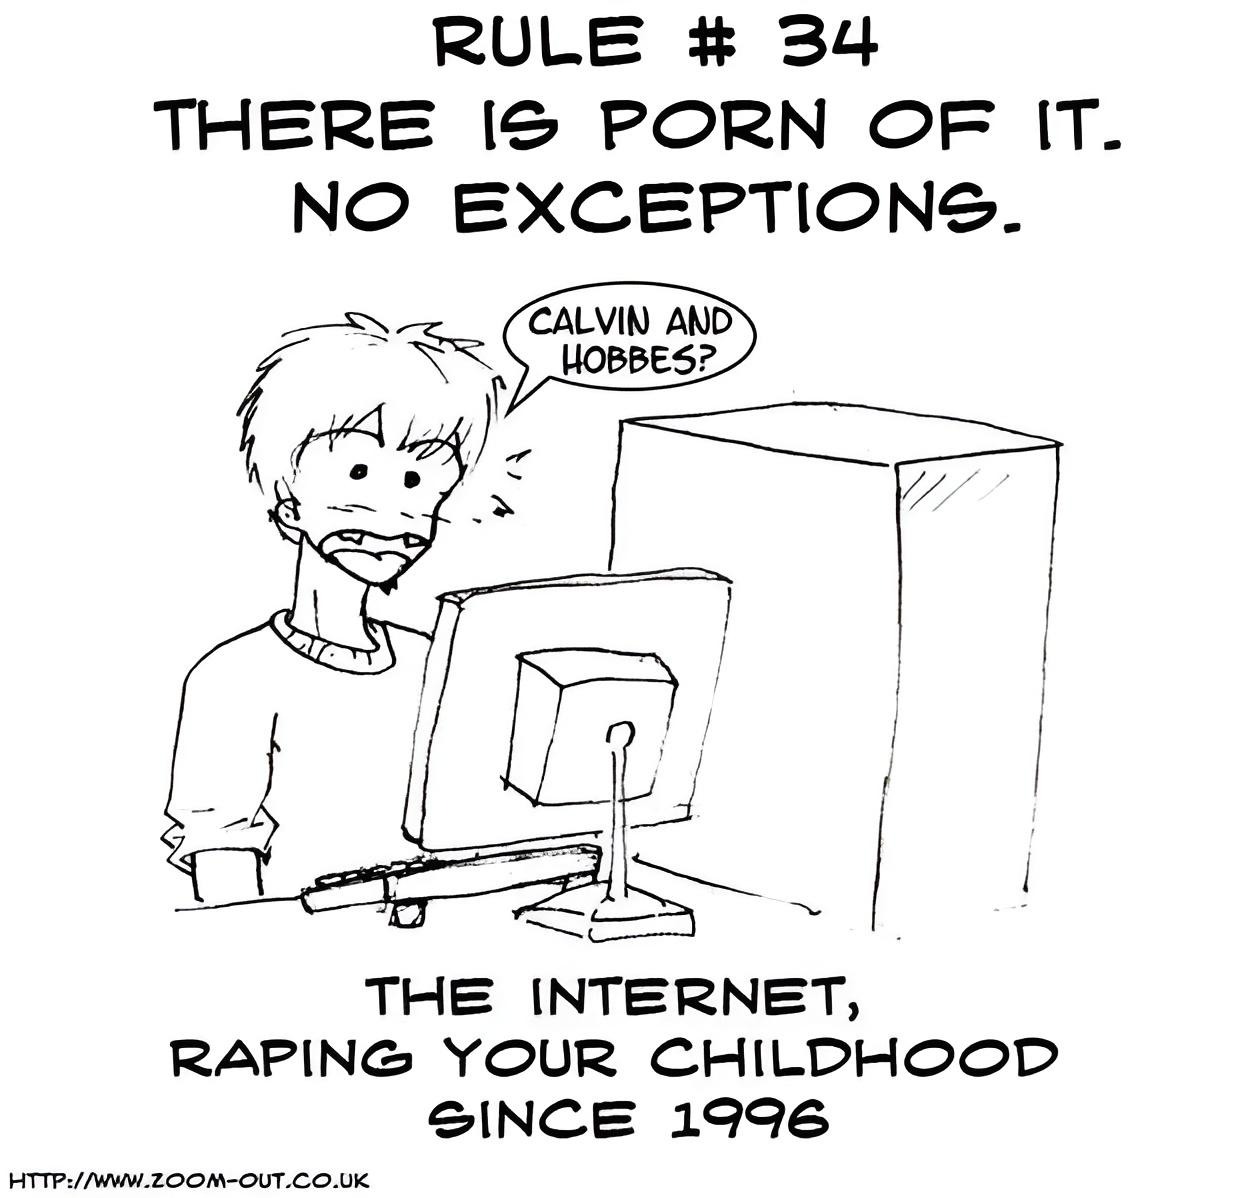  Qu Es La Regla 34 De Internet Kudasai